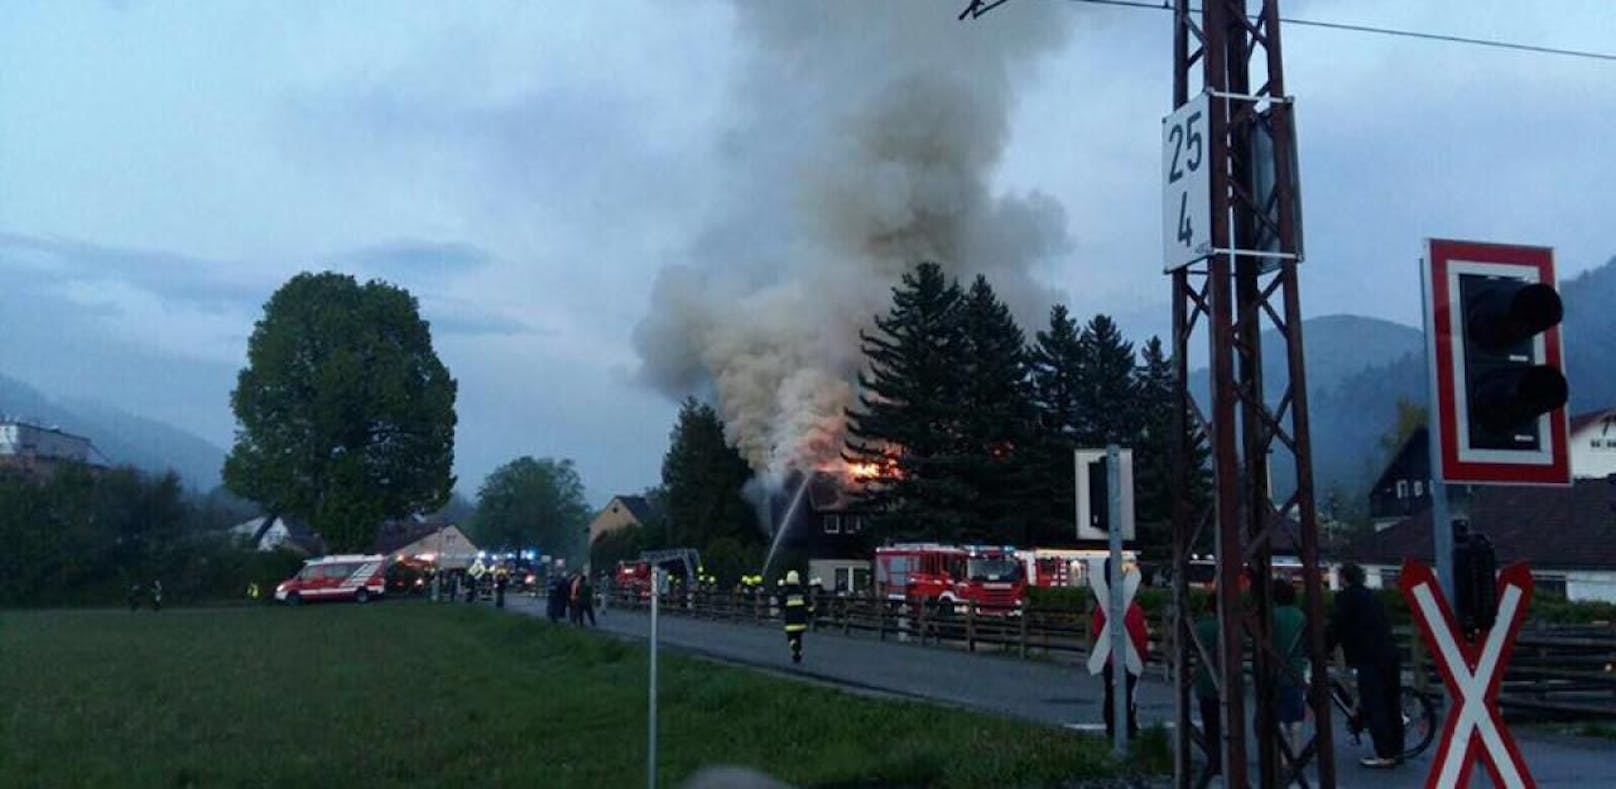 Ex-Sägewerk in Flammen: Großeinsatz für Florianis